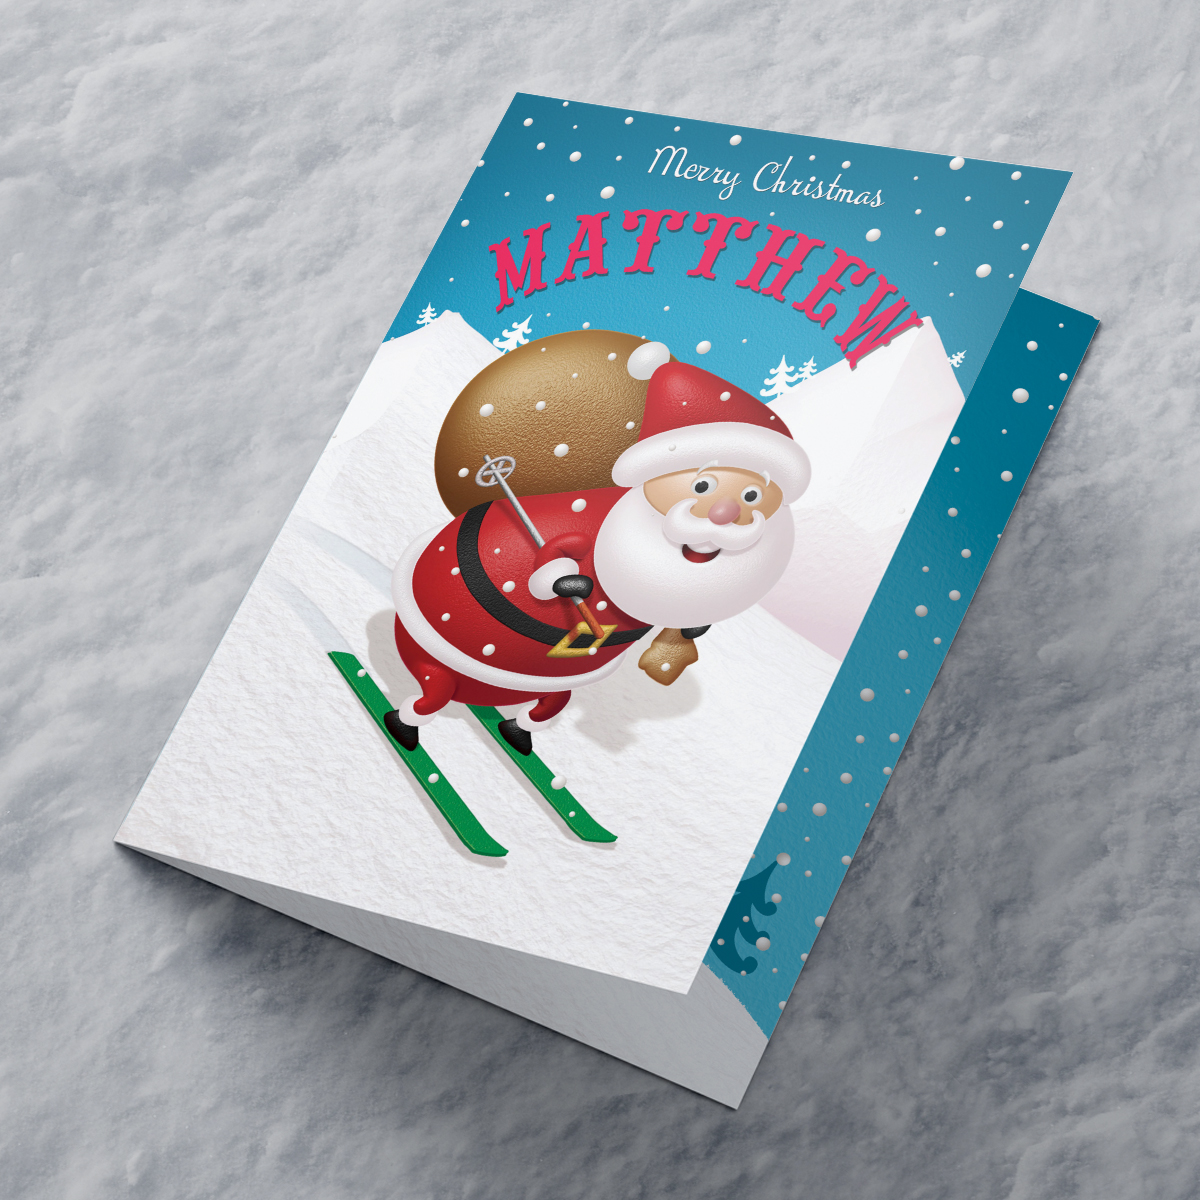 Personalised Christmas Card - Skiing Santa